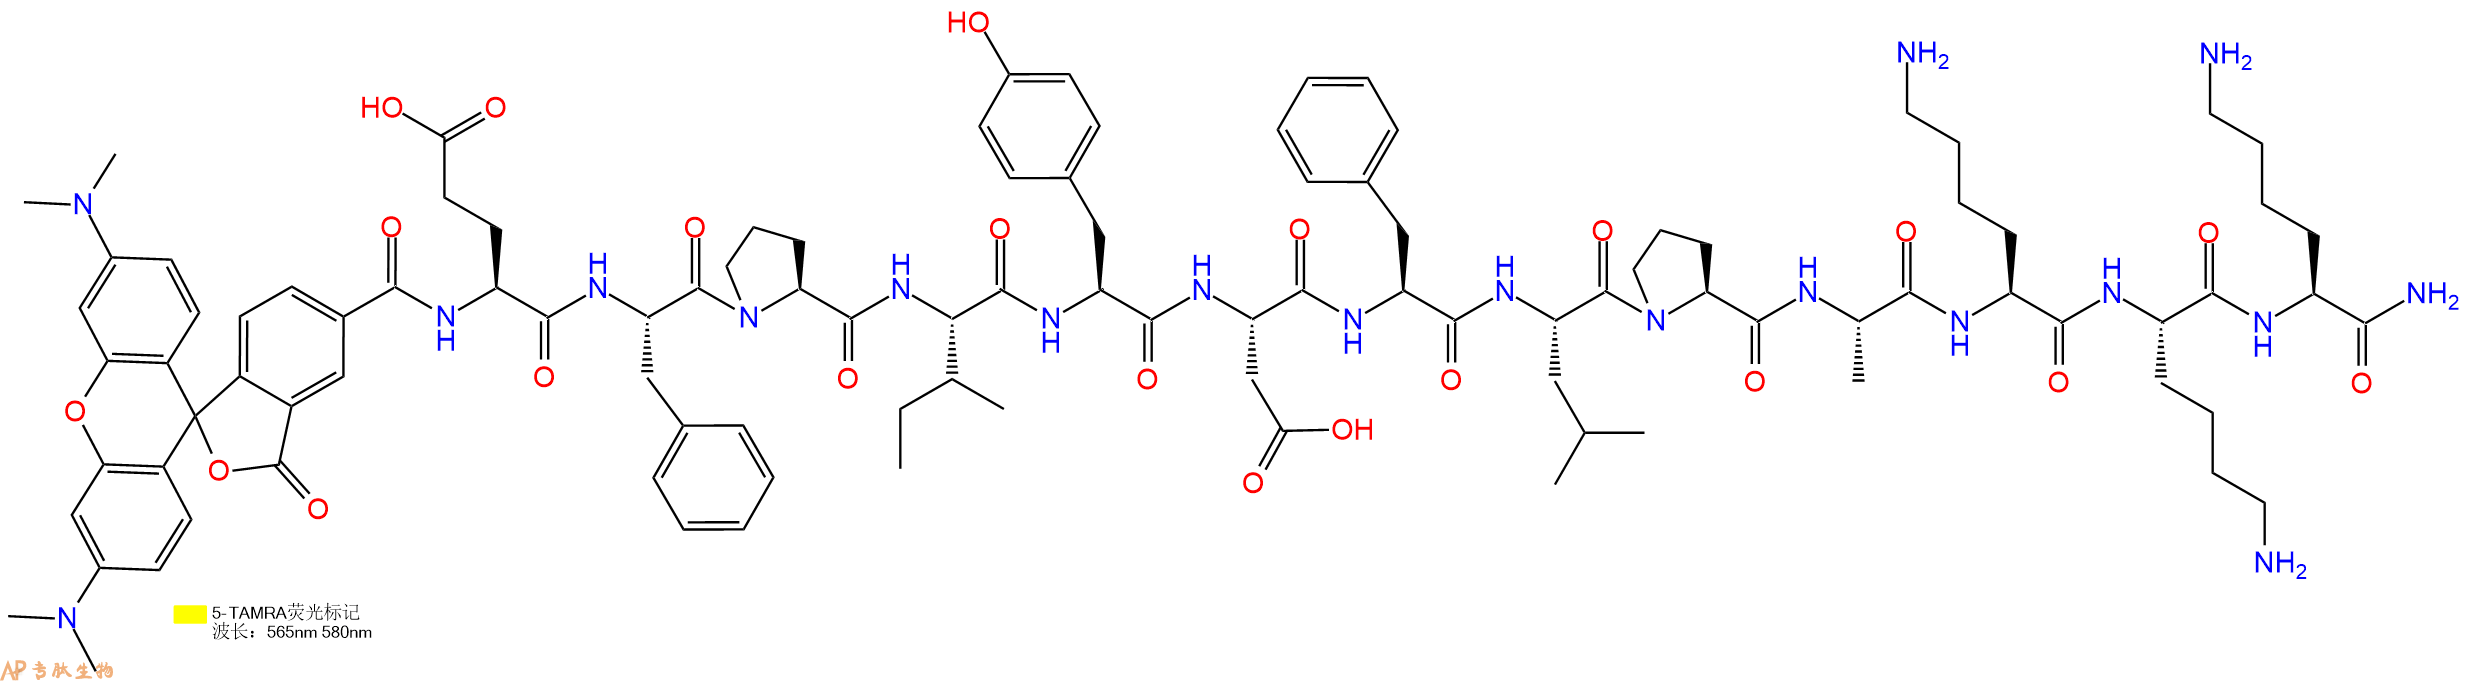 专肽生物产品5TAMRA-EFPIYDFLPAKKK-NH2